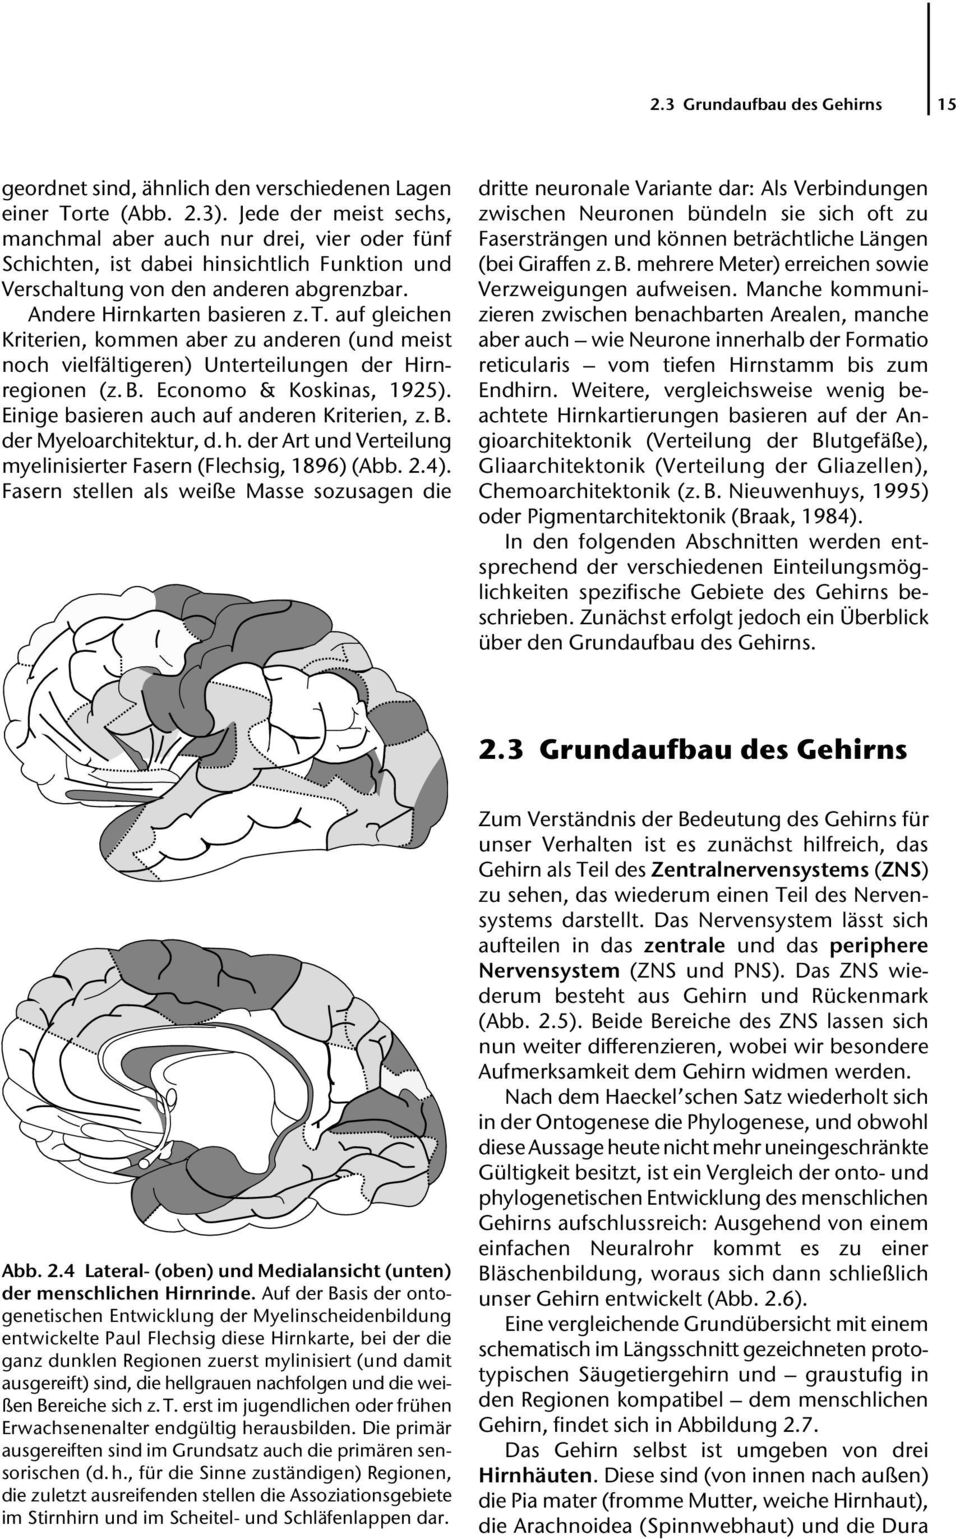 auf gleichen Kriterien, kommen aber zu anderen (und meist noch vielfältigeren) Unterteilungen der Hirnregionen (z. B. Economo & Koskinas, 1925). Einige basieren auch auf anderen Kriterien, z. B. der Myeloarchitektur, d.